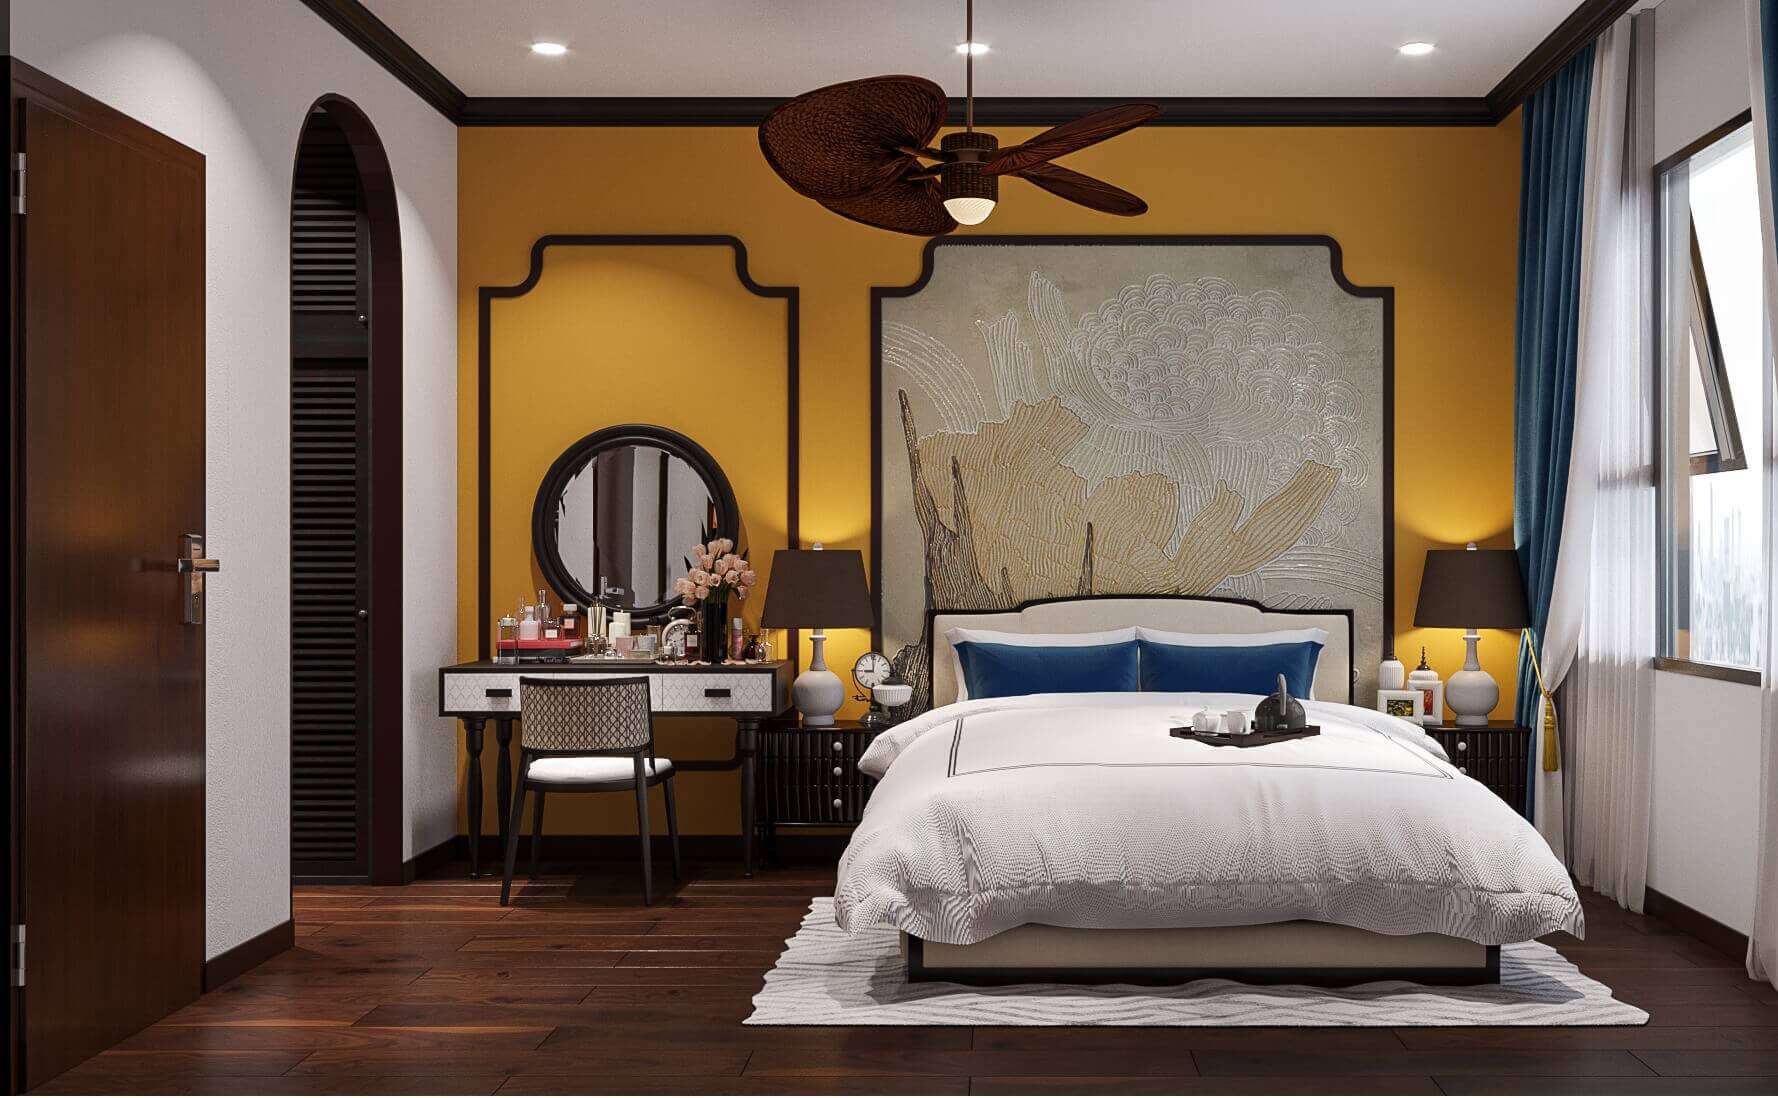 Màu vàng cũng là một trong những màu thường gặp trong thiết kế nội thất phong cách Indochine cho phòng ngủ